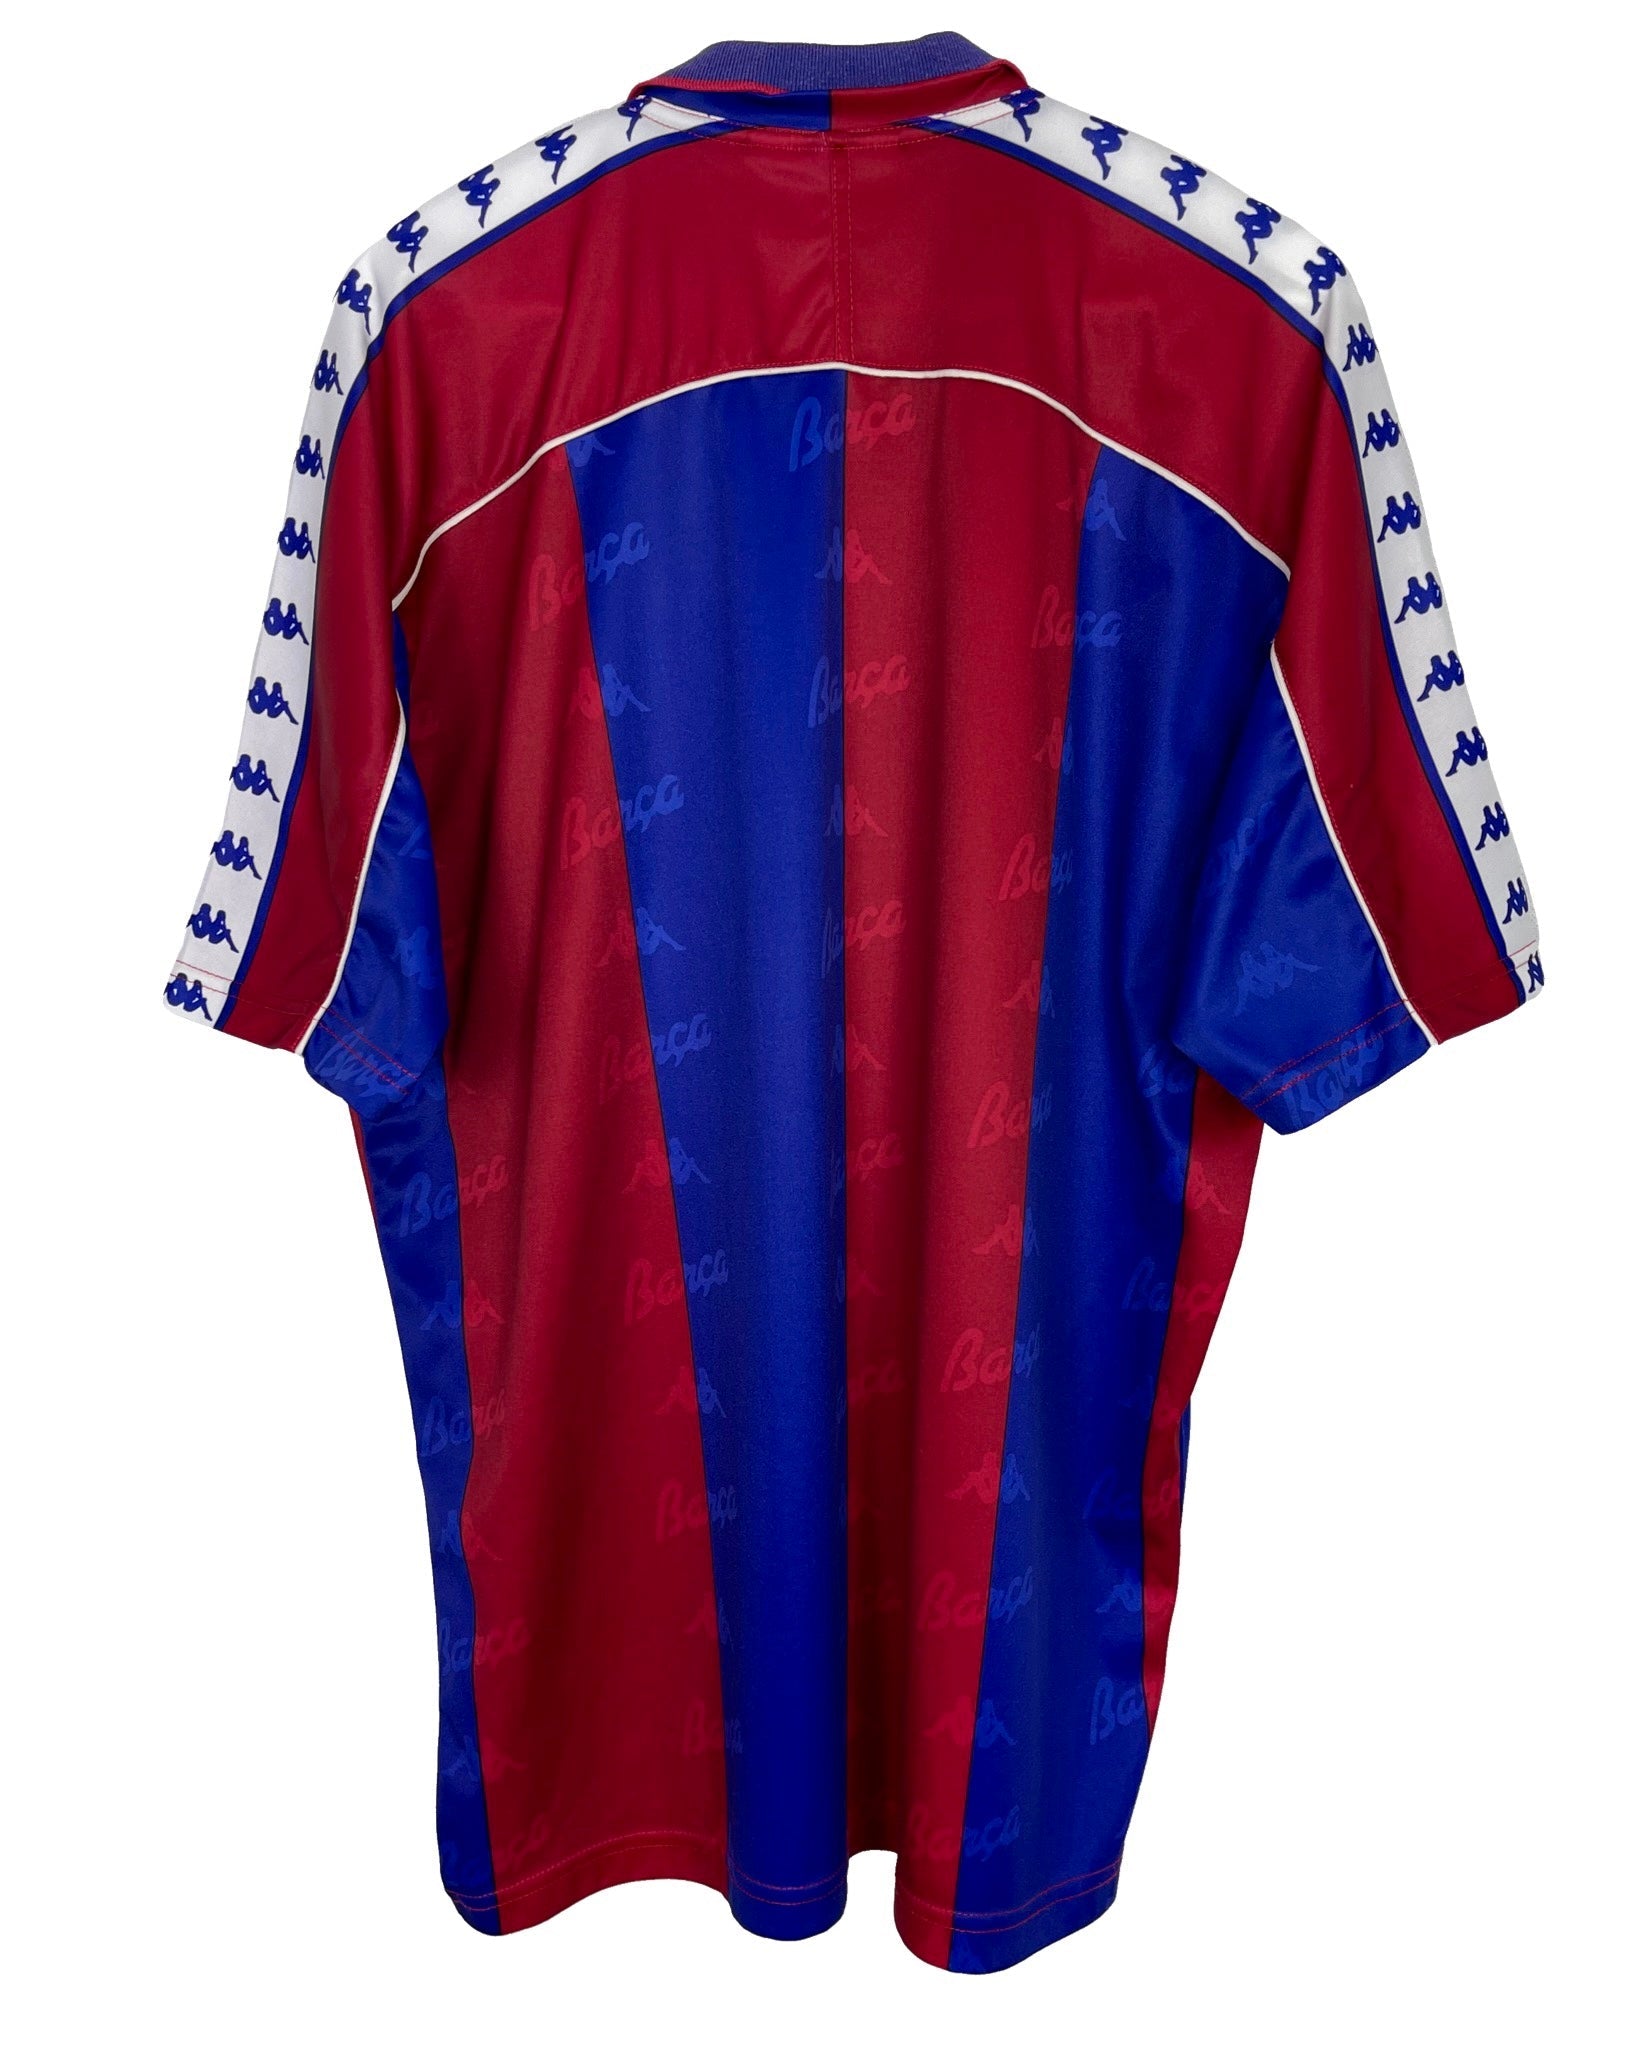  Maillot de football Kappa Maillot de football - FC Barcelona 92' 95' - XL - PLOMOSTORE